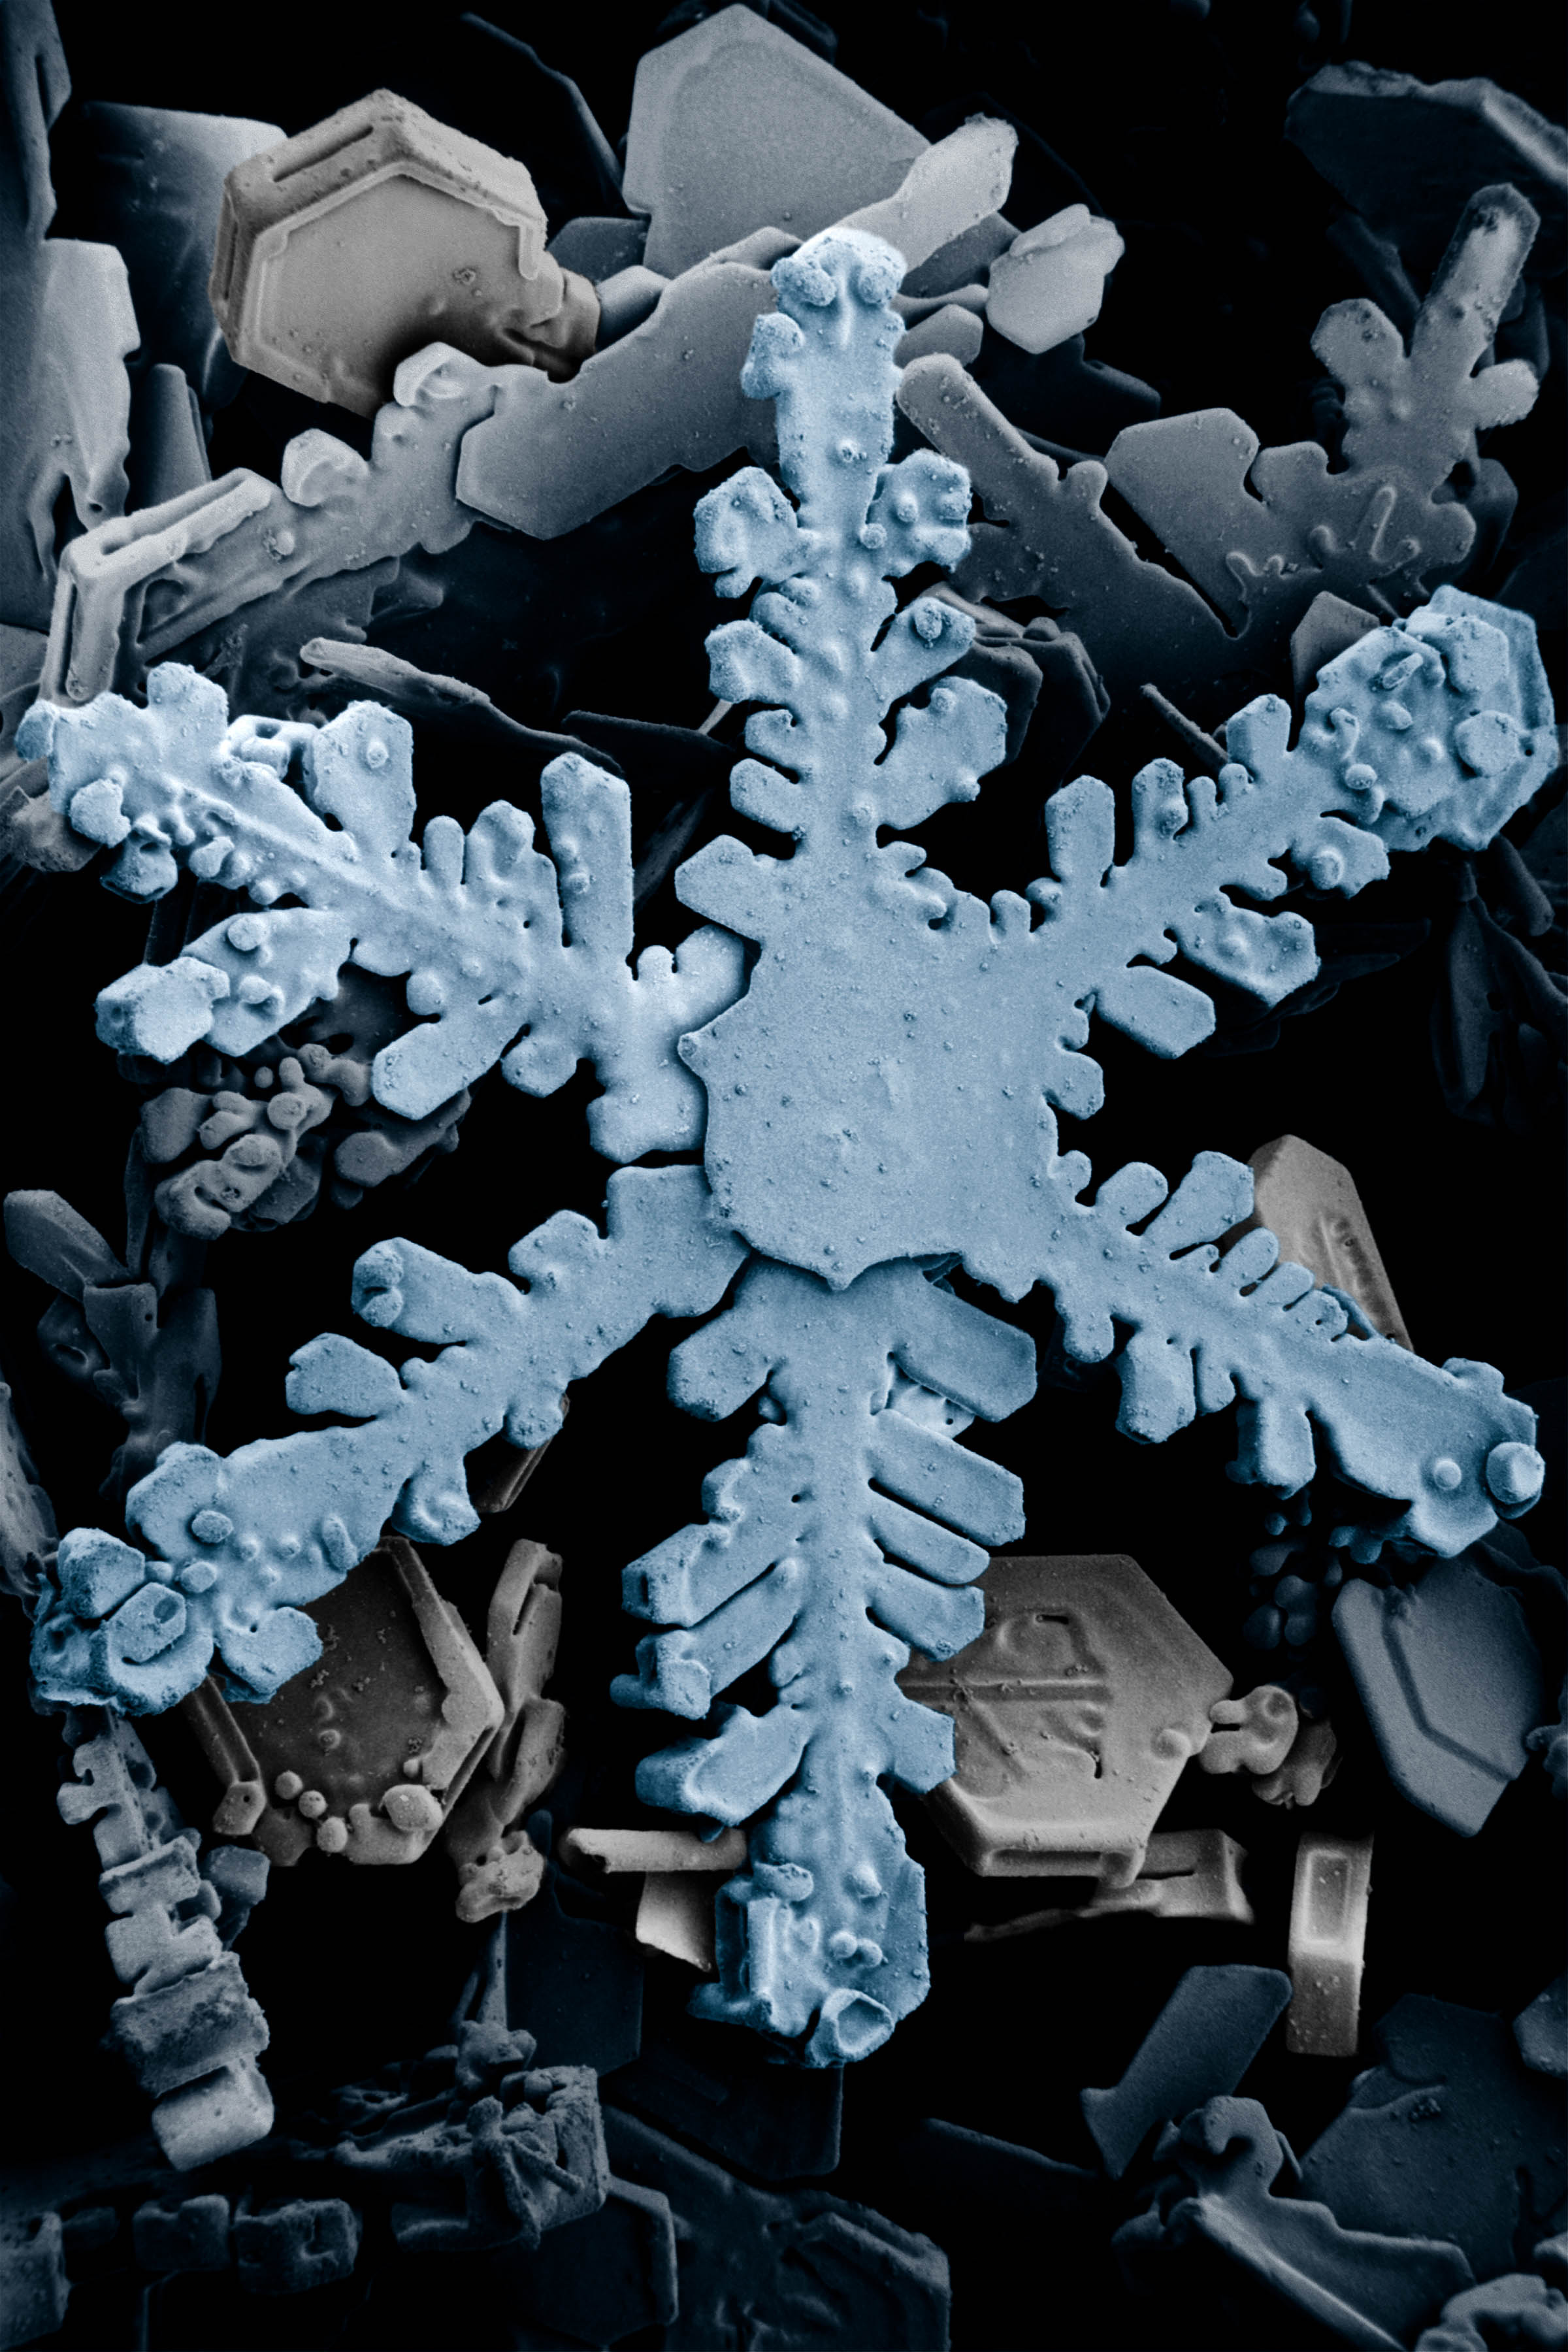 Copos de nieve vistos a través de un microscopio de barrido electrónico y coloreado artificialmente.